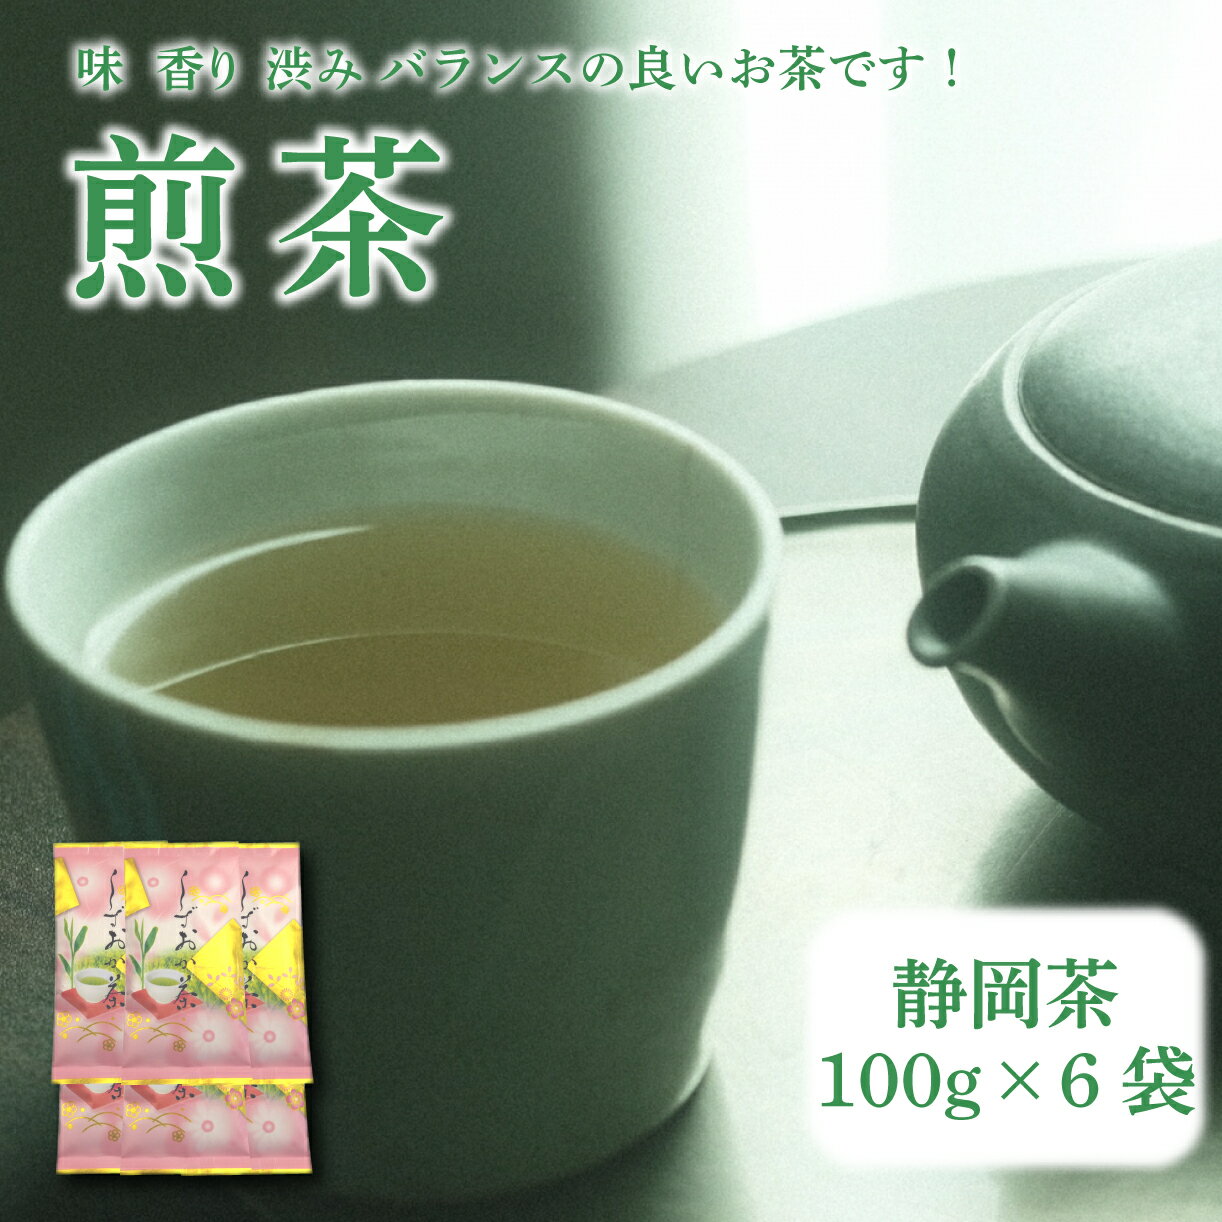 [静岡茶]煎茶100g×6袋入 ご家庭用 家庭用 静岡 静岡茶